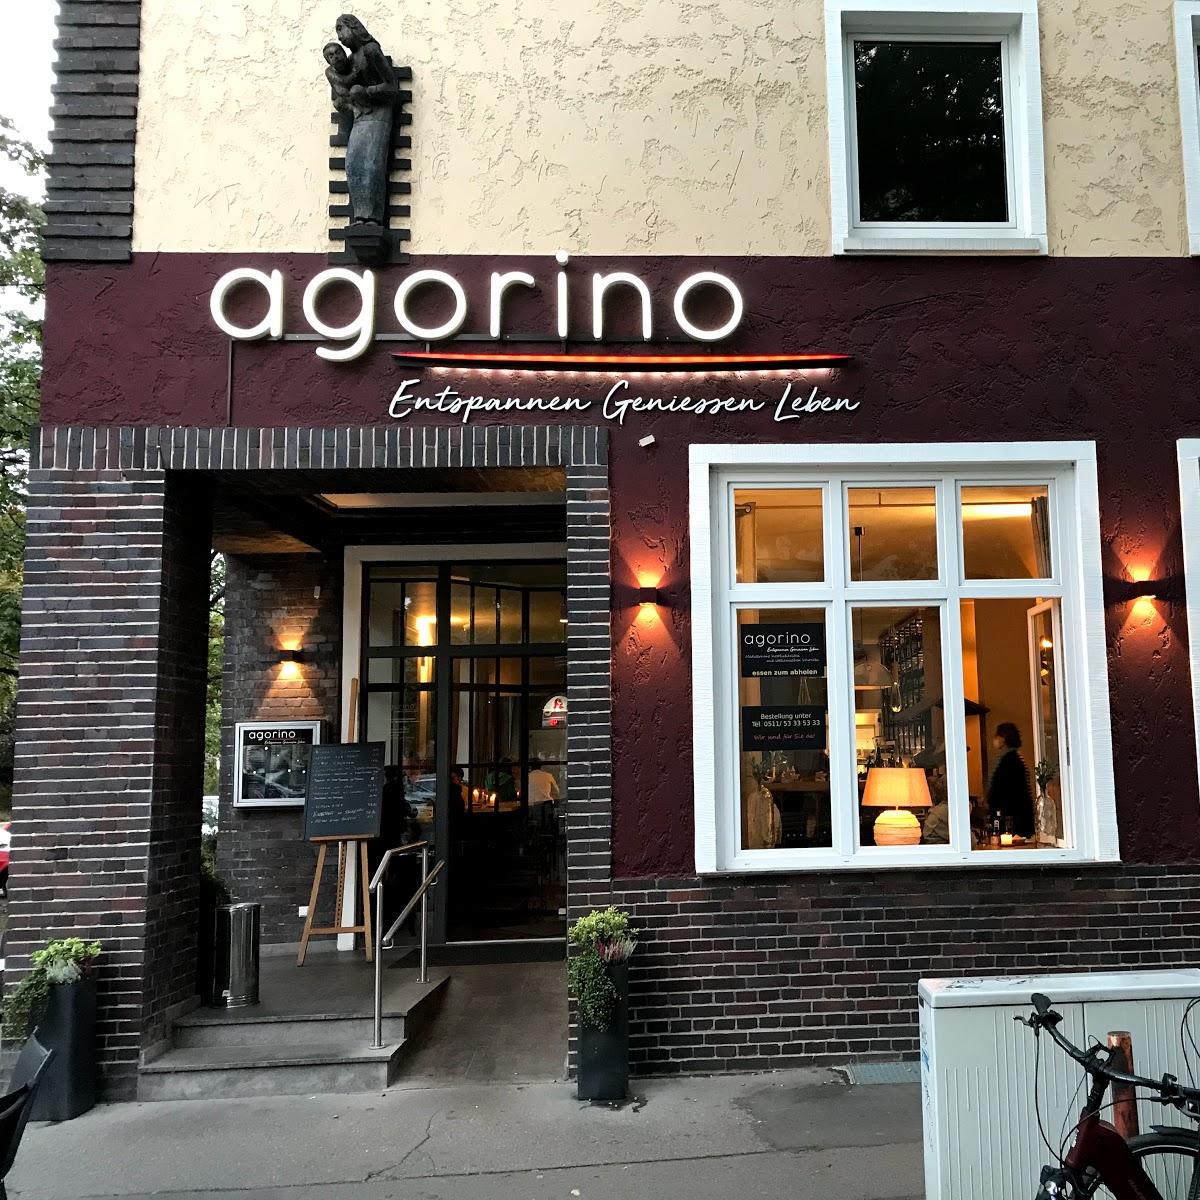 Restaurant "agorino - Entspannen Genießen Leben" in Hannover